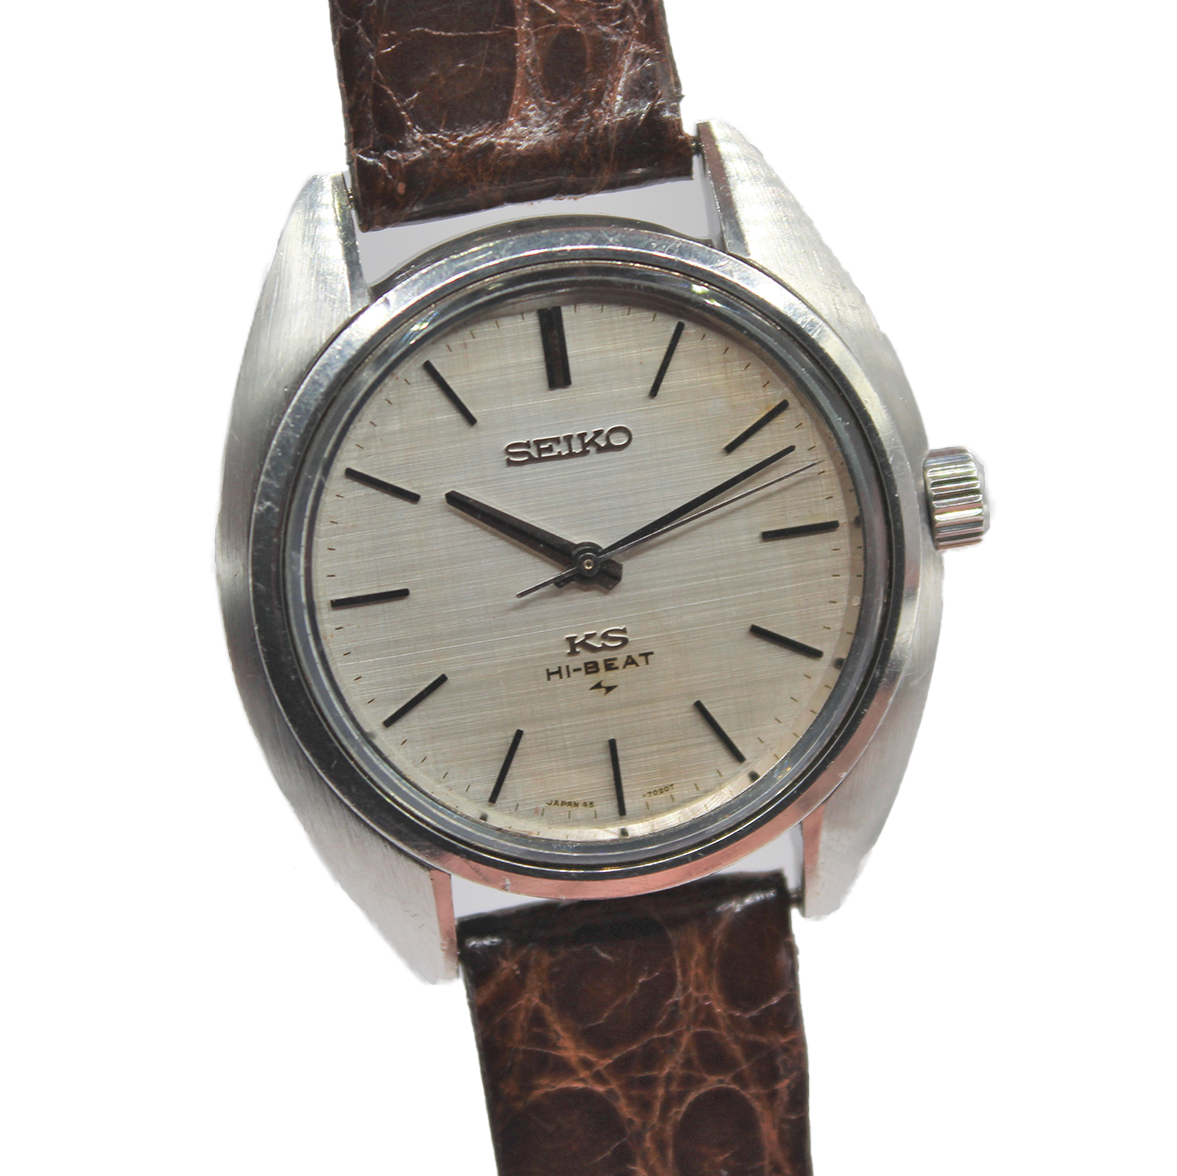 Vintage King Seiko Hi-Beat 45-7010 Serviced - Toronto Vintage Watches -  Vintage Seiko passion